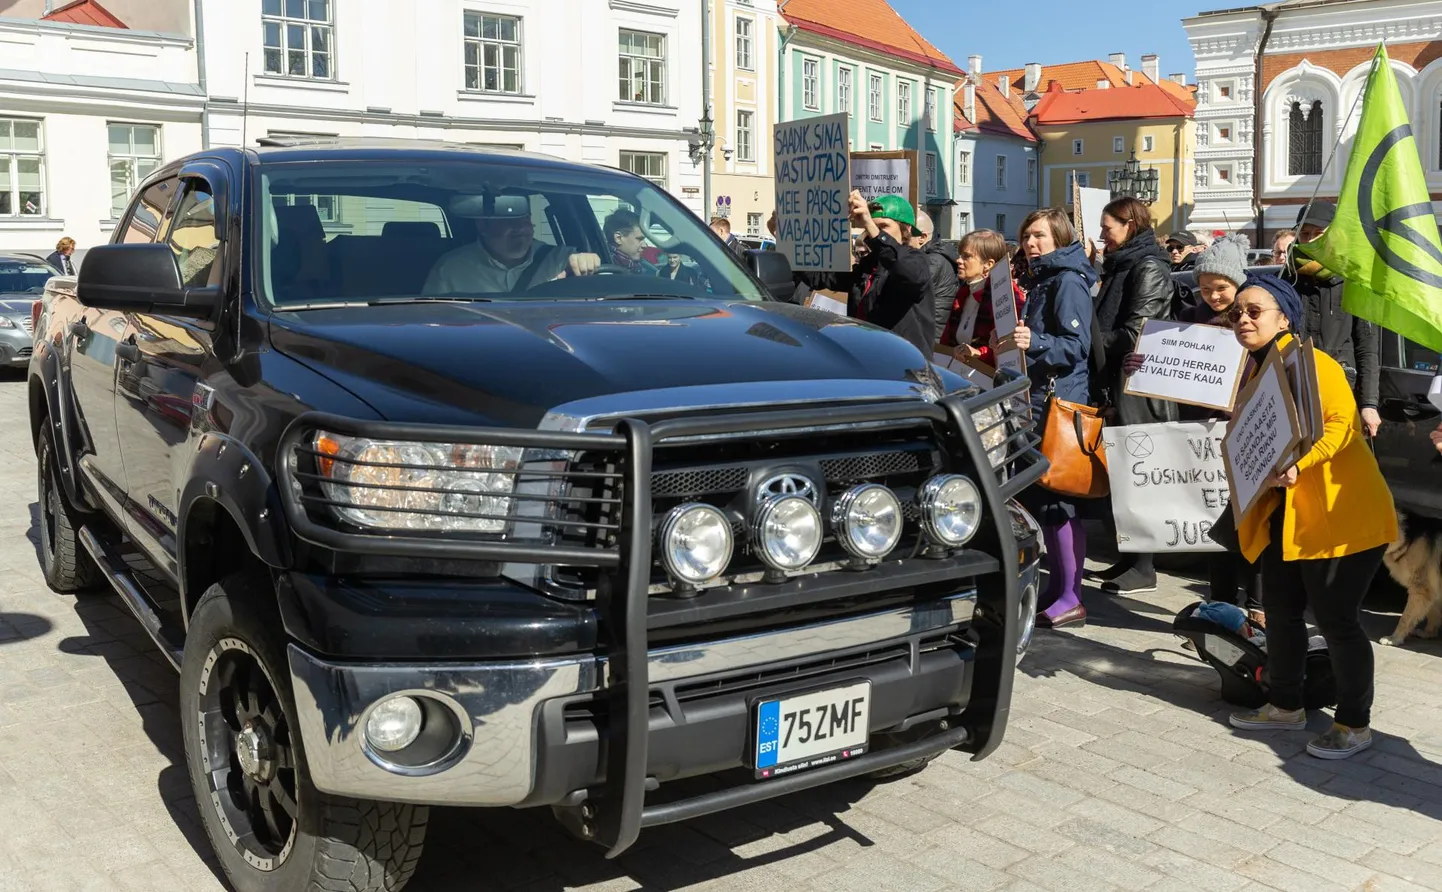 Kaido Höövelsonil ongi nii suur auto, et sellega saab korra Tallinnas käia ja tuleb uuesti tankida. Foto on tehtud Tallinnas 2019. aasta kevadel.